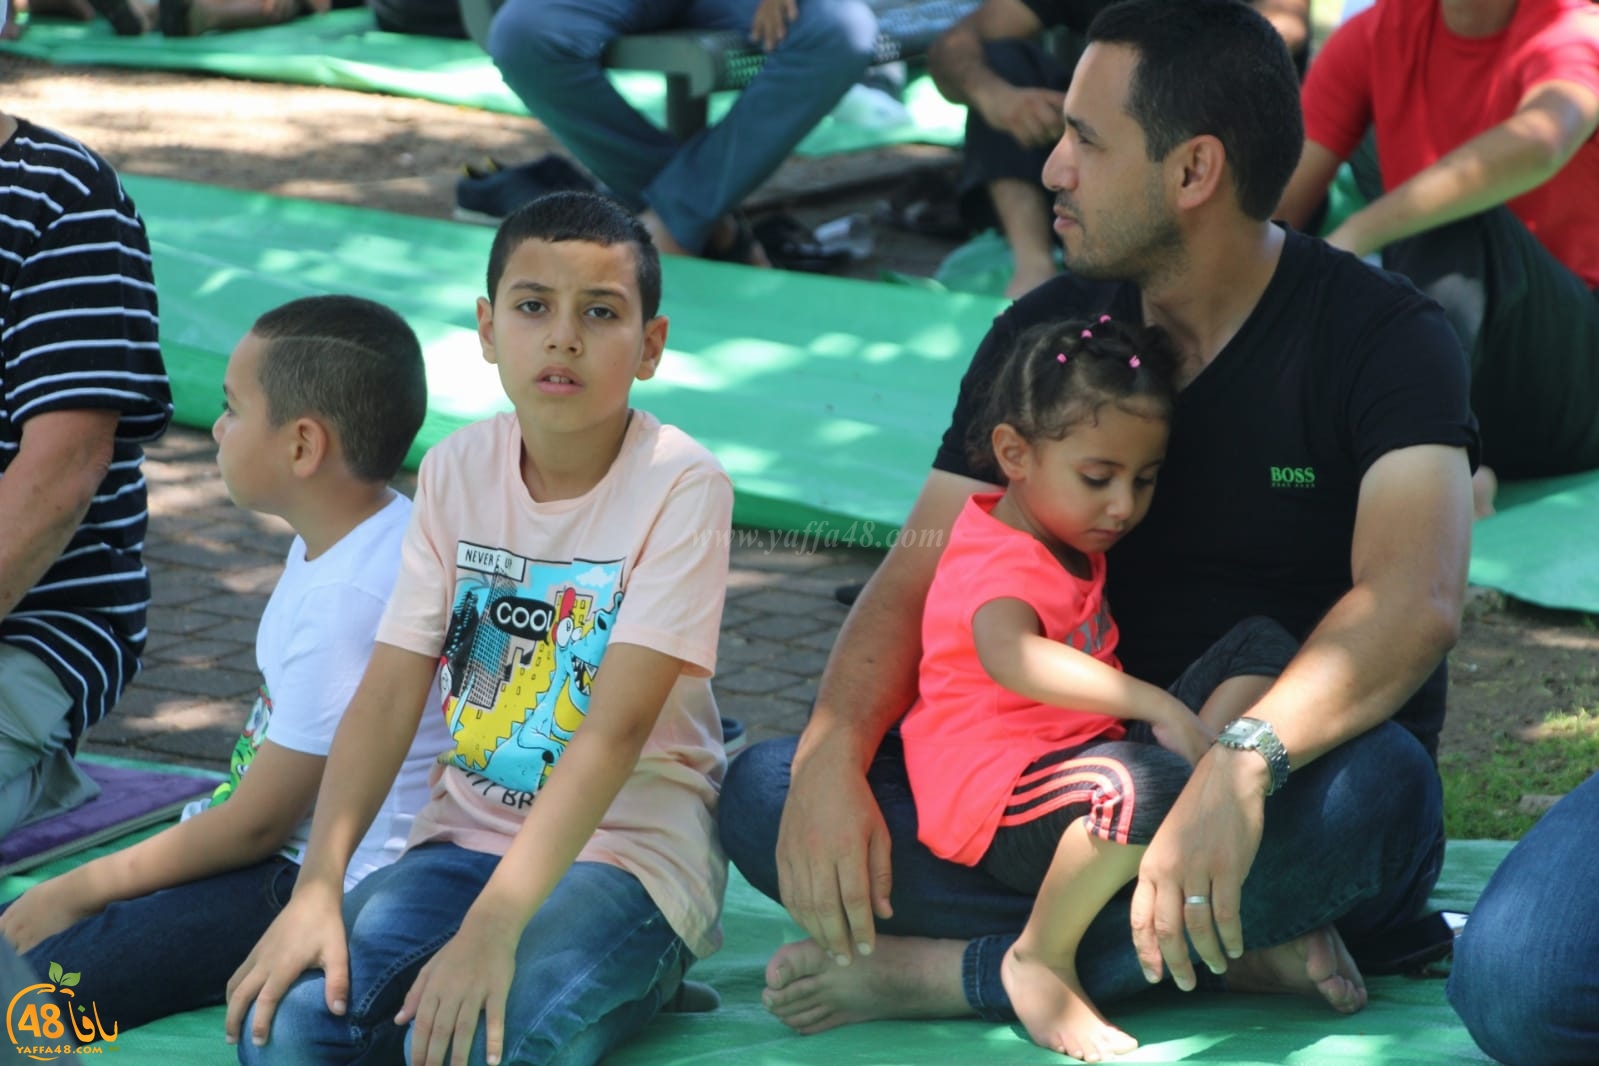 فيديو: صلاة جمعة حاشدة بحديقة العجمي في يافا استنكاراً لاعتداءات الشرطة المتكررة 